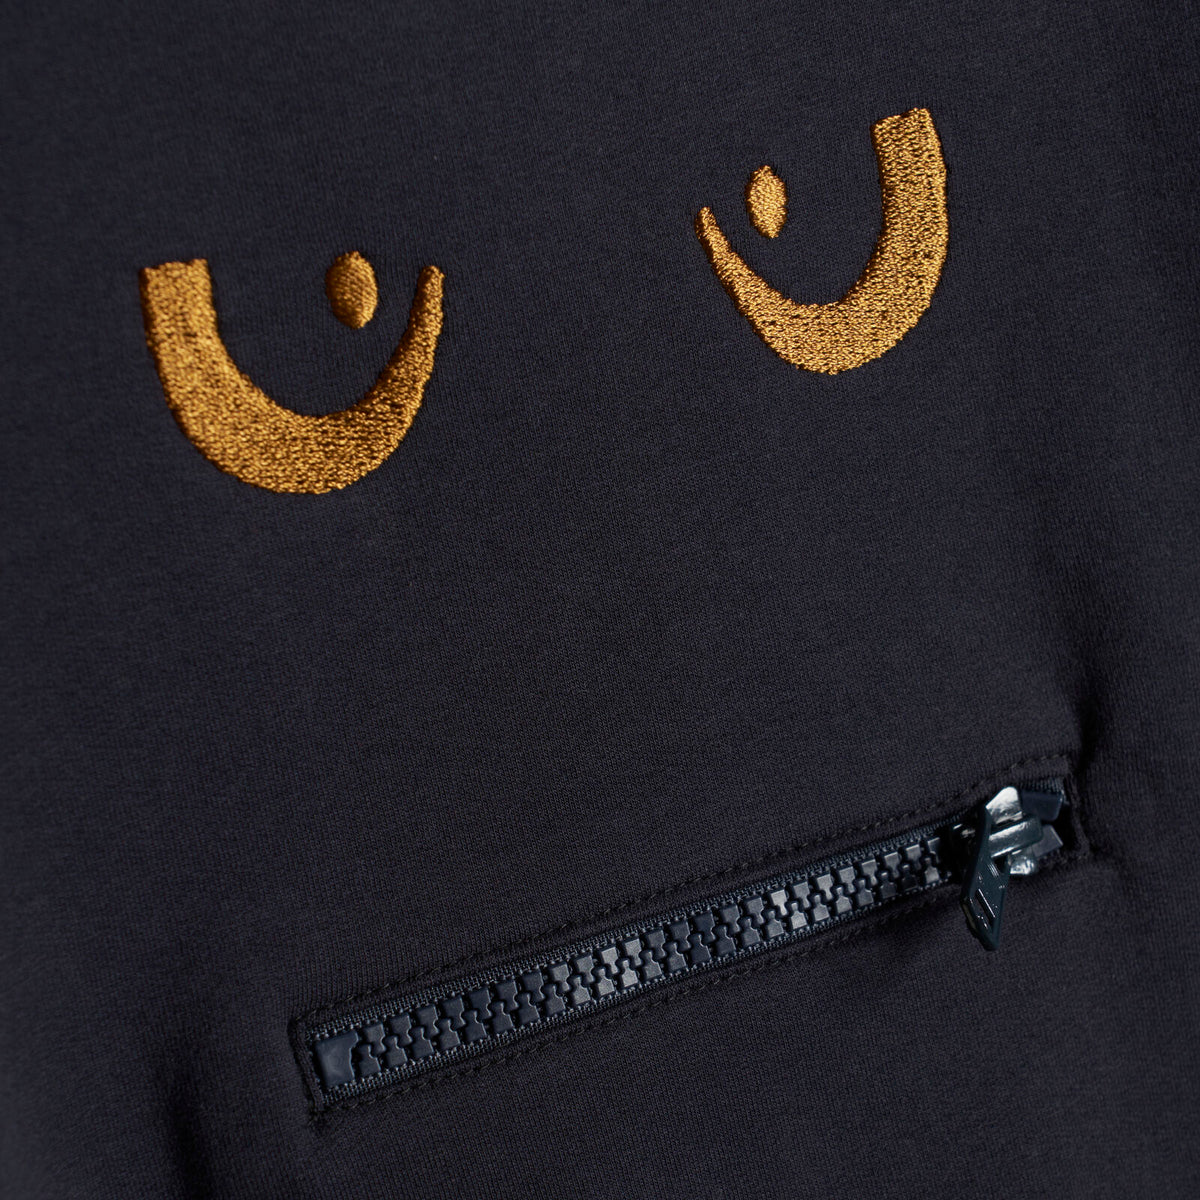 Ein tolles Sweatshirt mit einem Monster auf der Brust. Ein spezielles Detail, durch den Reißverschluss kann man die Zunge des Monsters hervorholen.